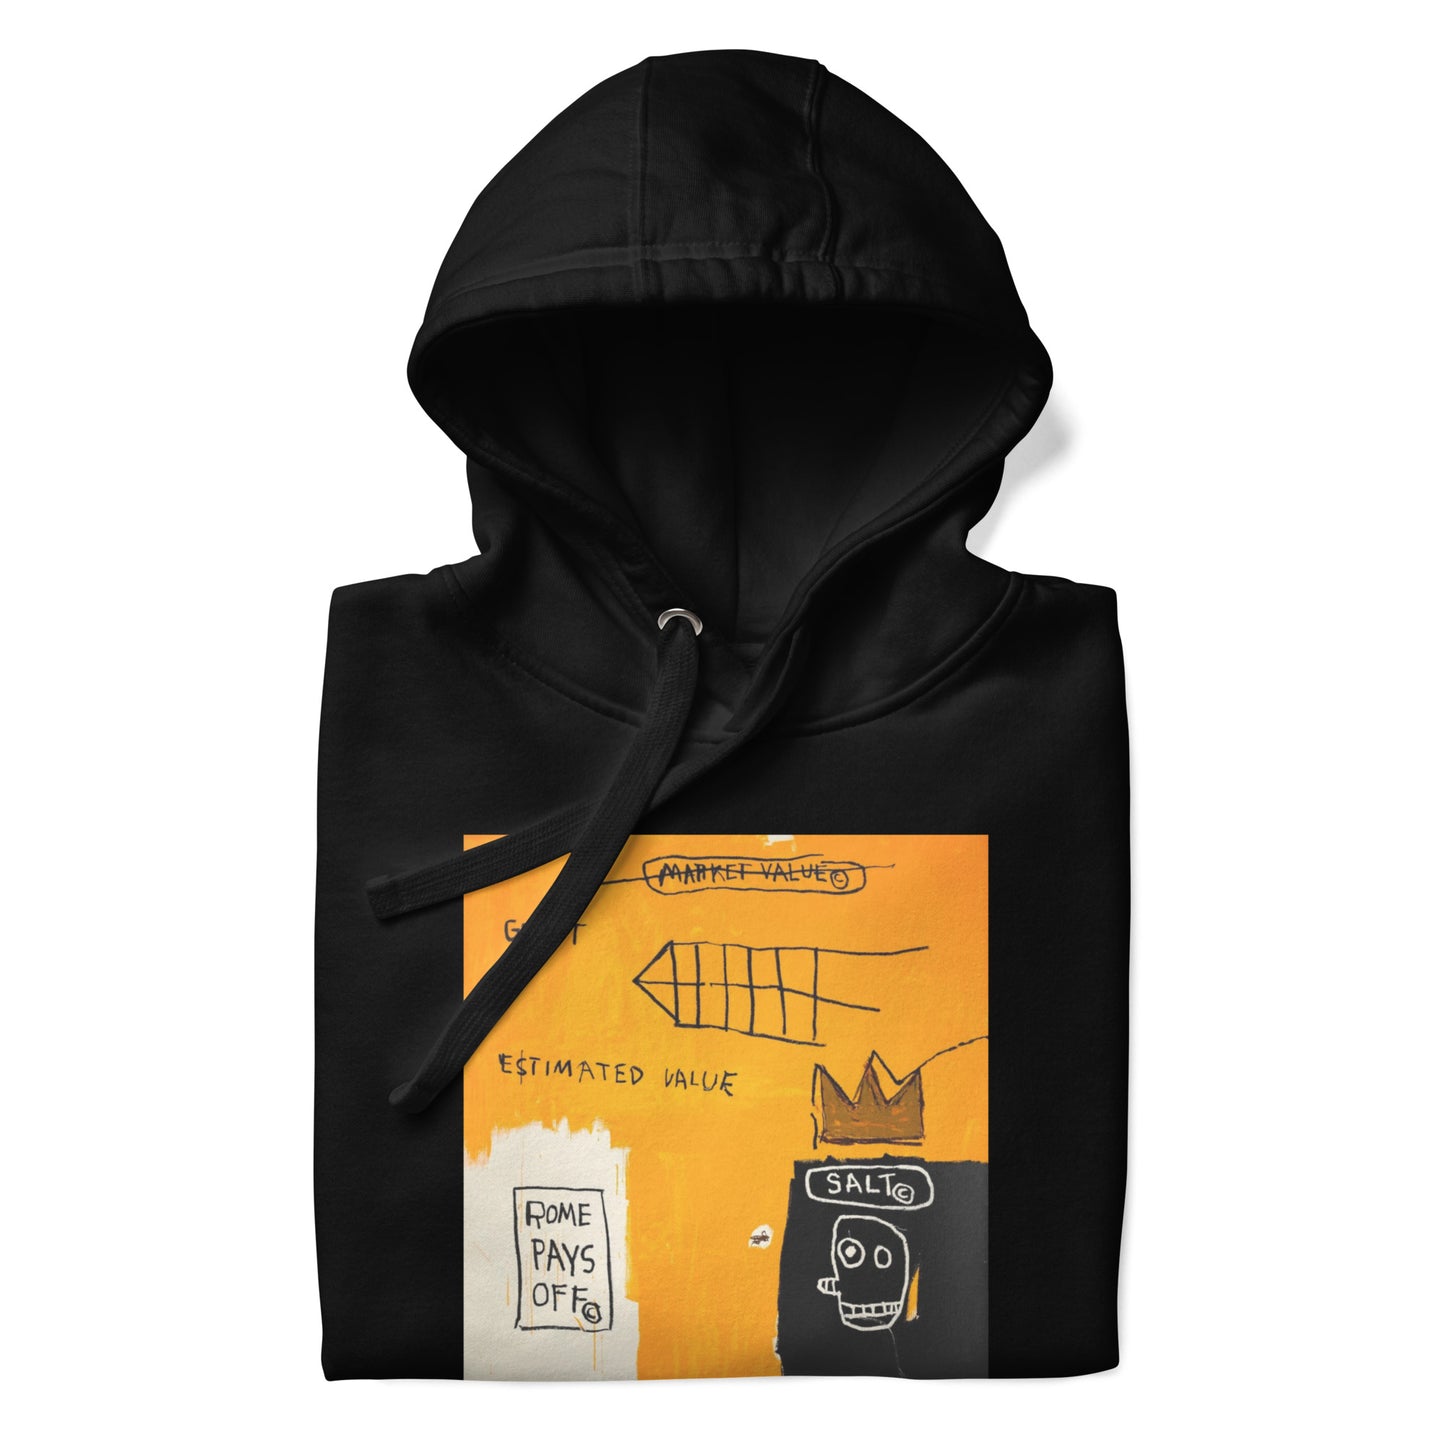 Jean-Michel Basquiat "Rome Pays Off" Artwork Printed Premium Streetwear Sweatshirt Hoodie Black